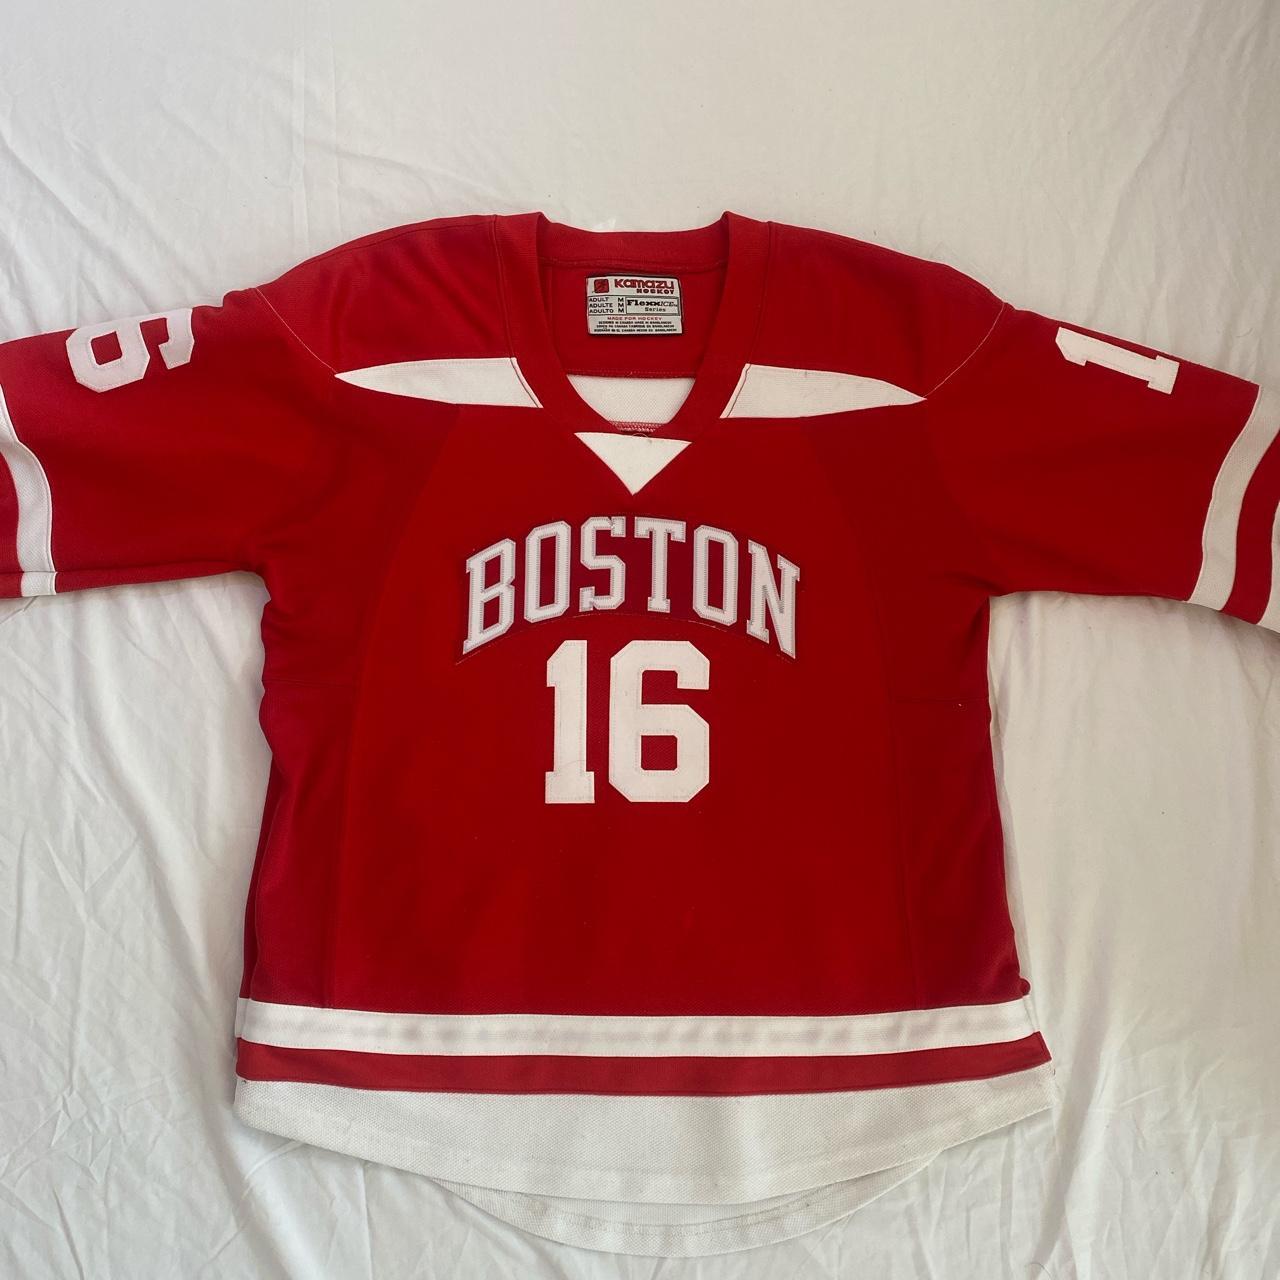 boston university hockey uniforms